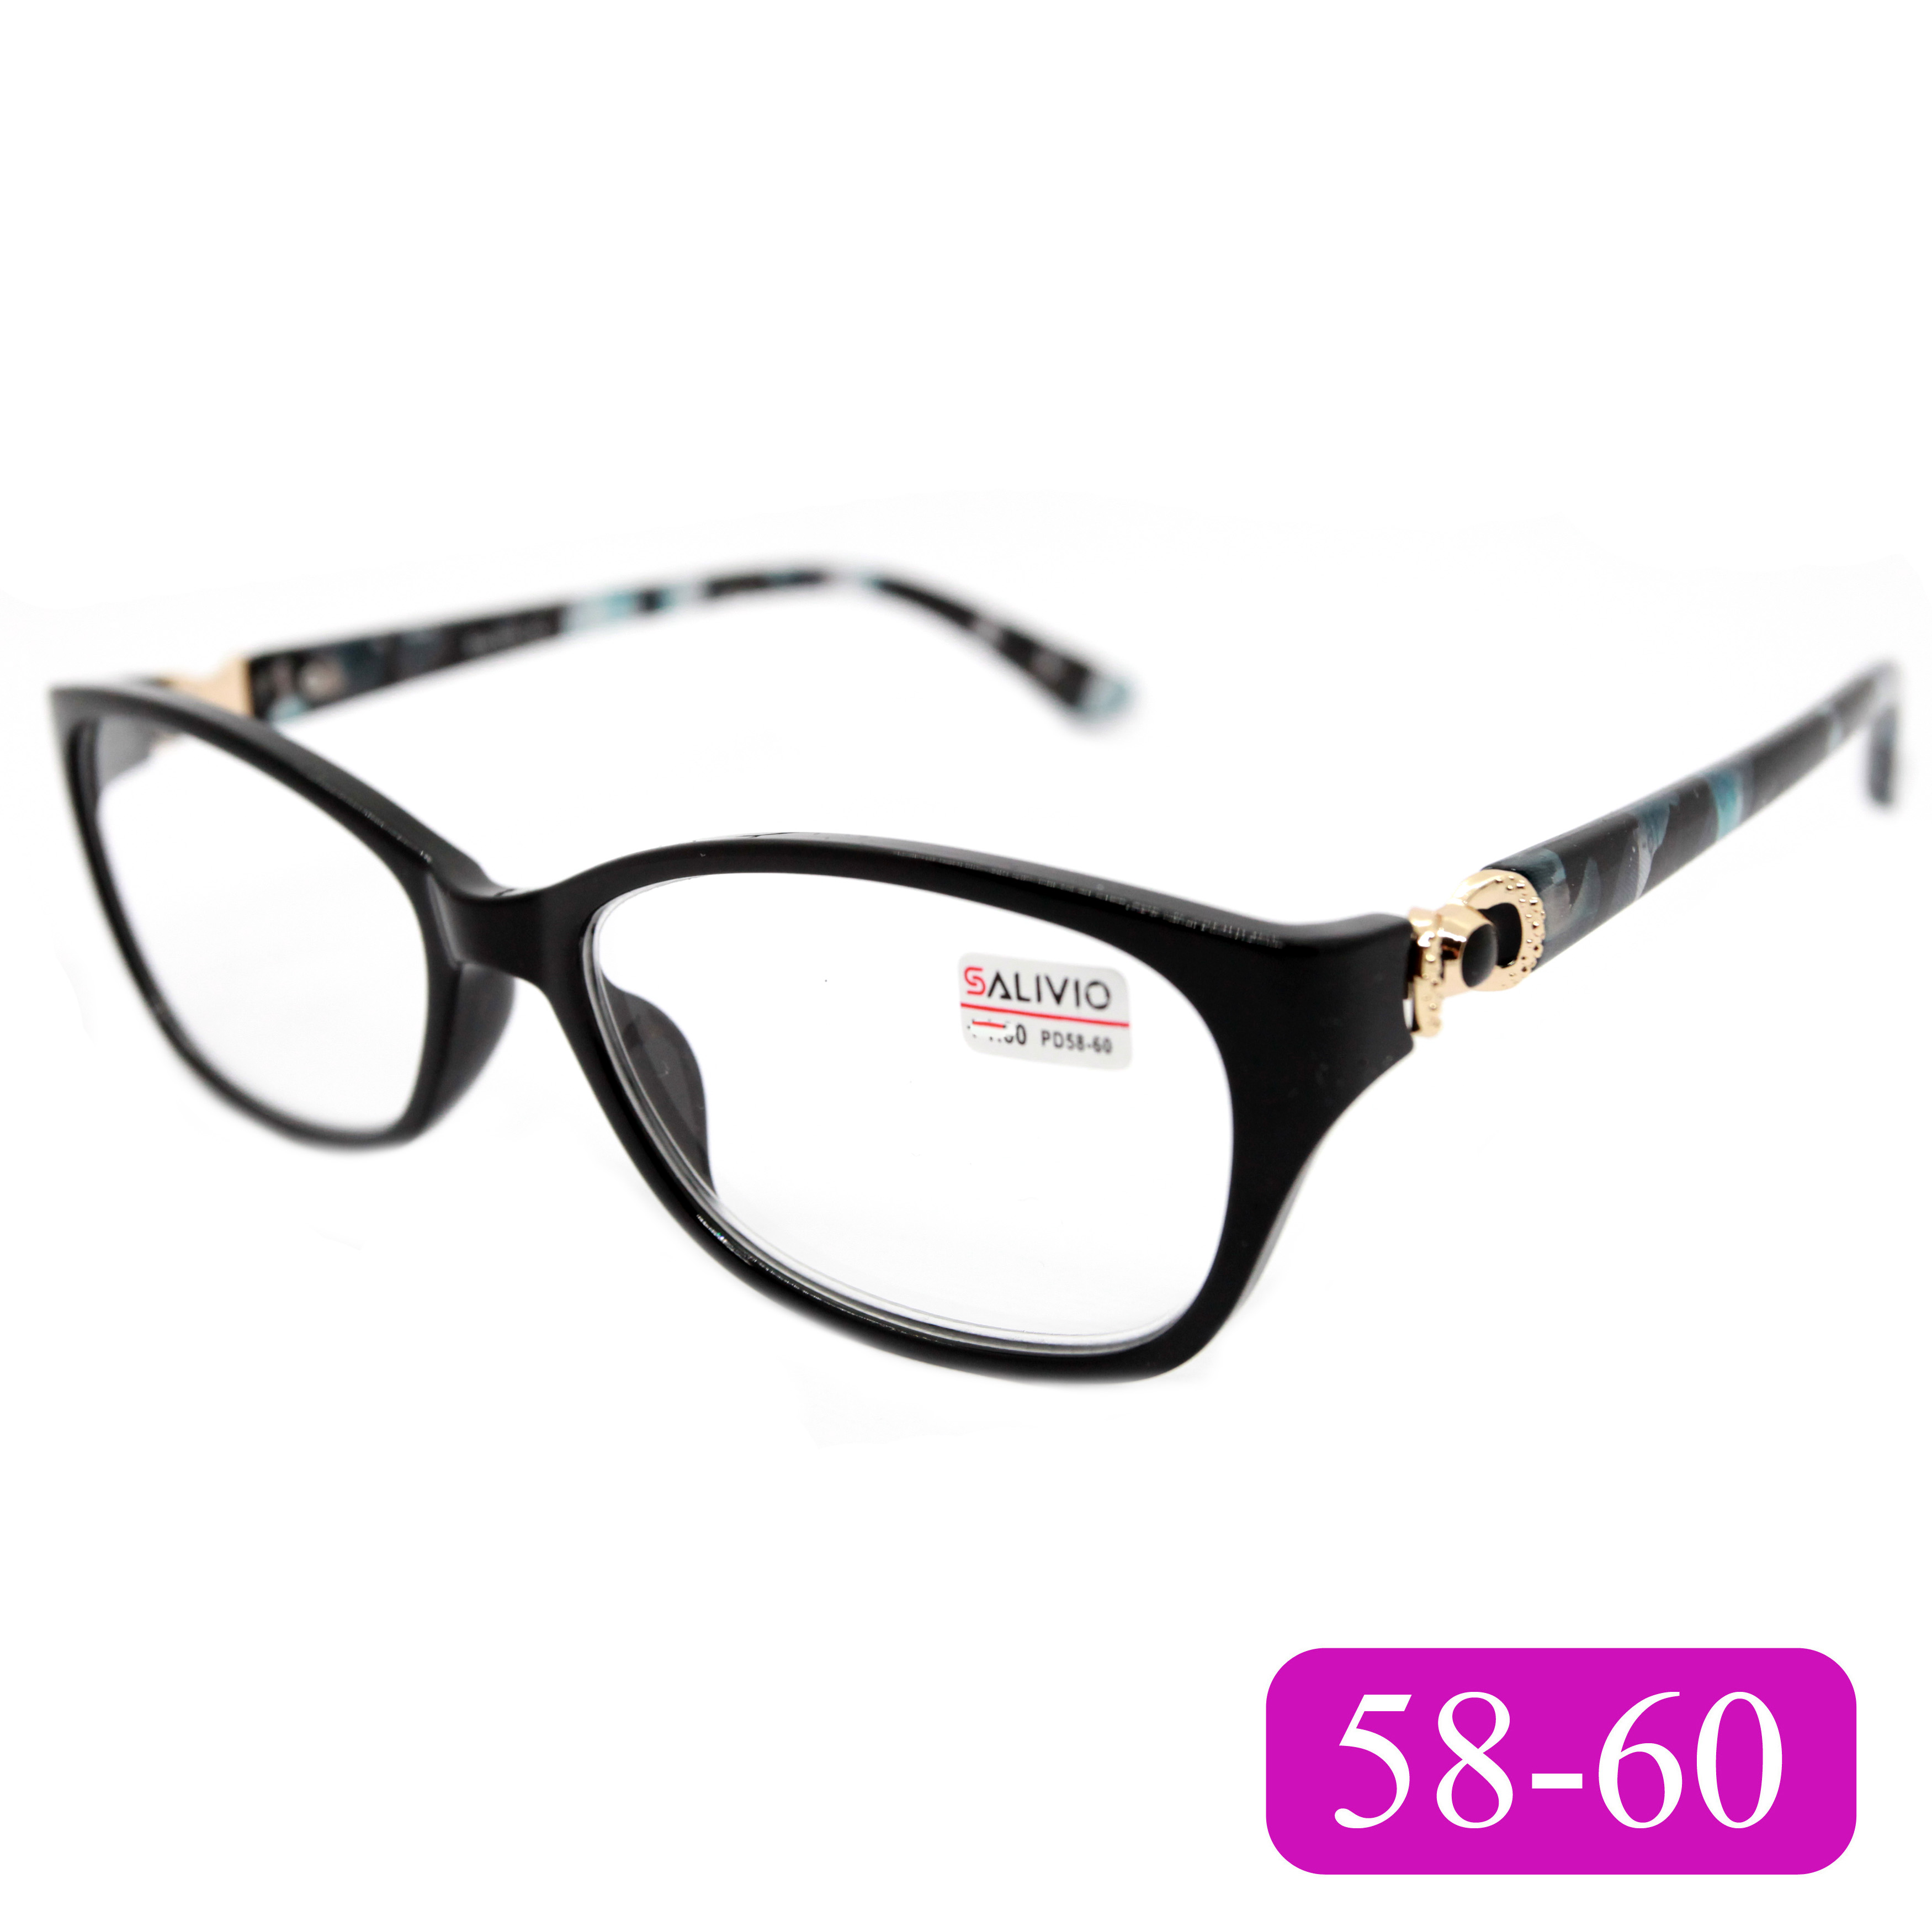 Готовые очки для чтения Salivio 0045 +2,25, без футляра, цвет черный, РЦ 58-60